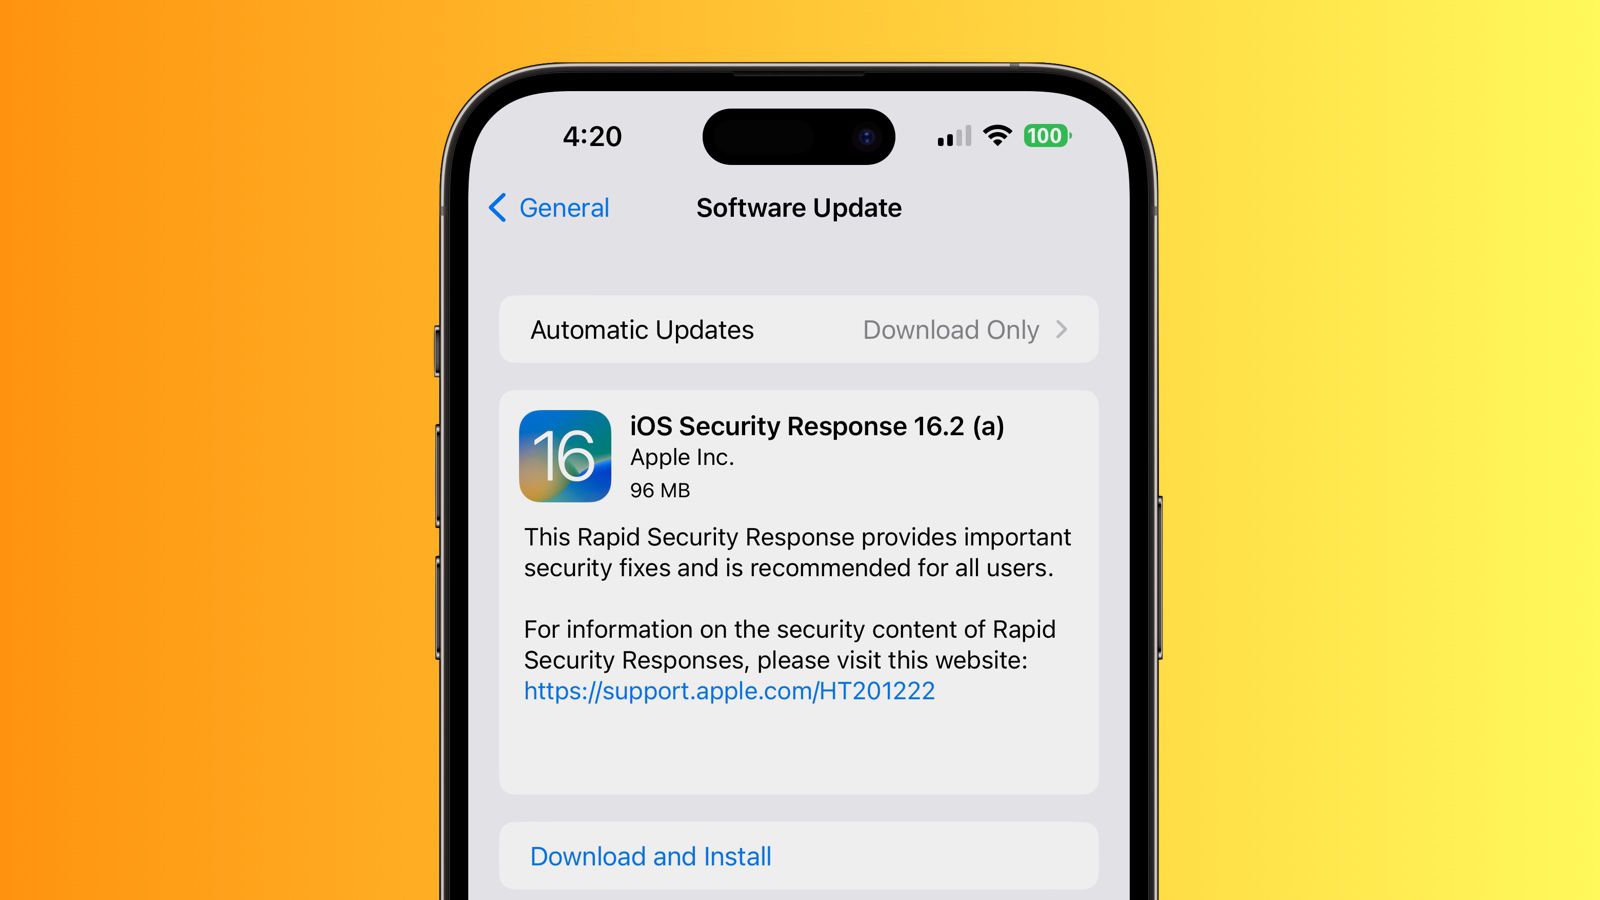 Apple выпустила патч безопасности iOS 16.2 (a). Он устанавливается без спроса пользователя